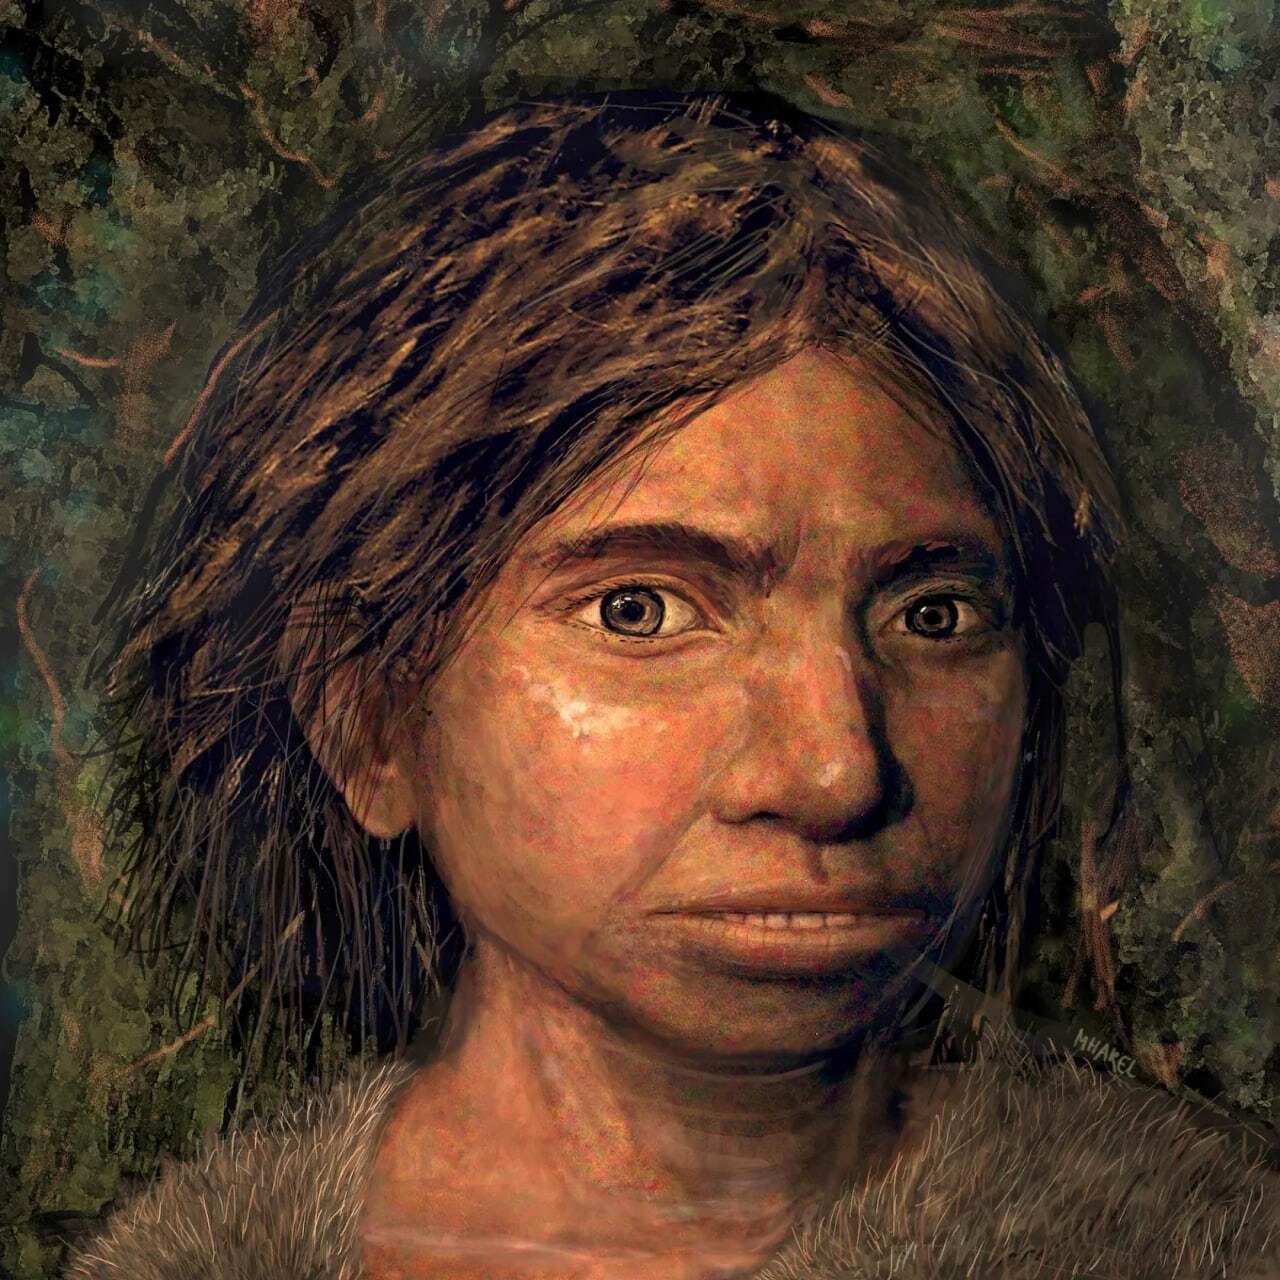 نوعی از انسان که 200000 سال پیش می زیسته است. دنیسوواها چه کسانی بودند؟+ عکس